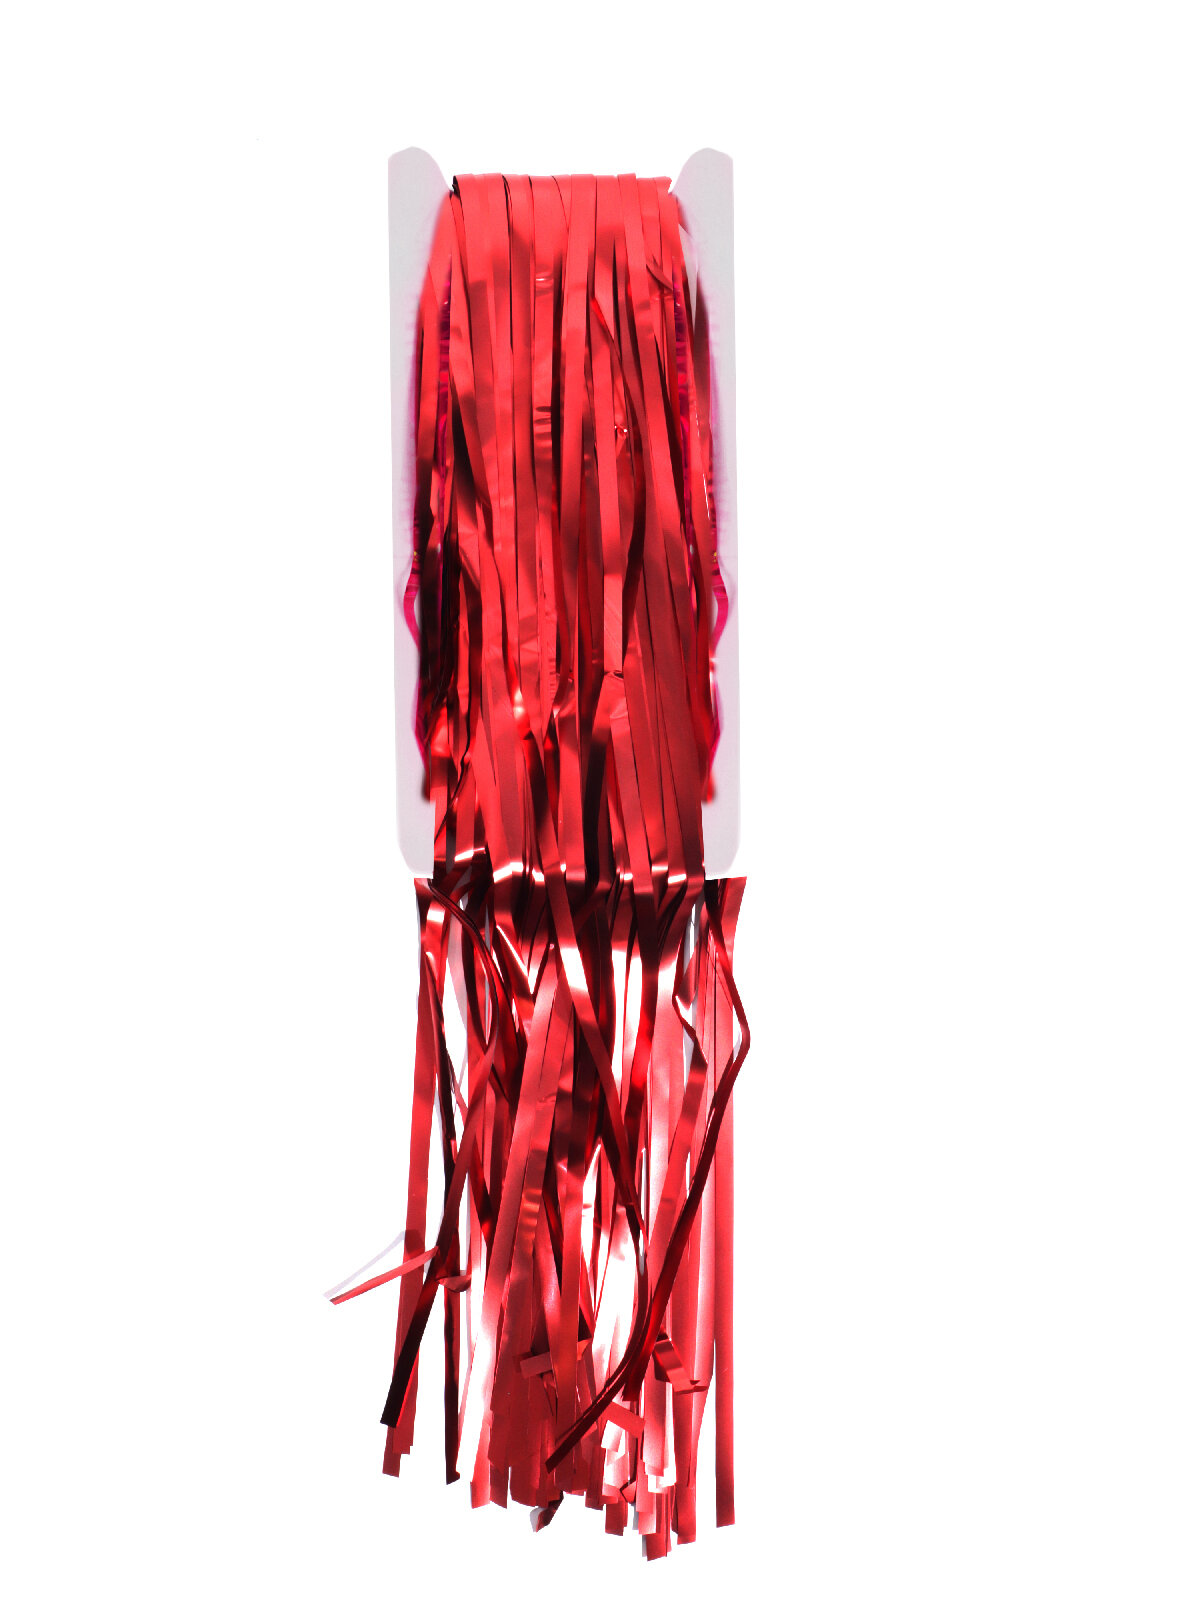 Новогодняя декорация Дождик из мишуры длина 2 м красный